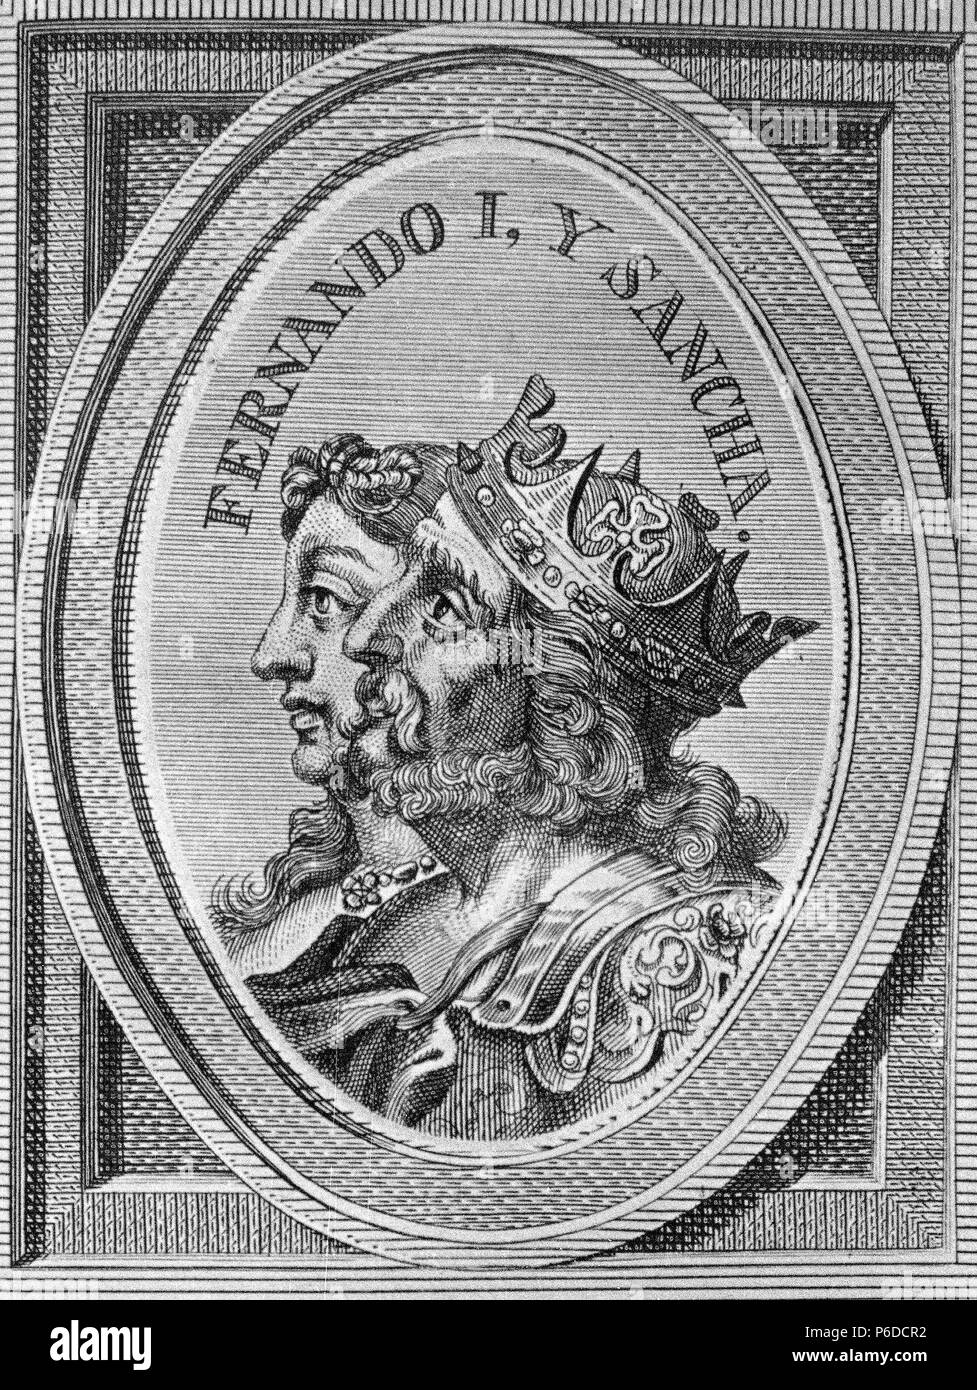 FERNANDO I ' EL MAGNO '. REY DE CASTILLA DE 1035 - 1065. Y SANCHA , REINA DE LEON DE 1037 - 1067. GRABADO RETRATO DE ARNOLDO VANWESTER , 1684. BIBLIOTECA NACIONAL. MADRID. Stock Photo